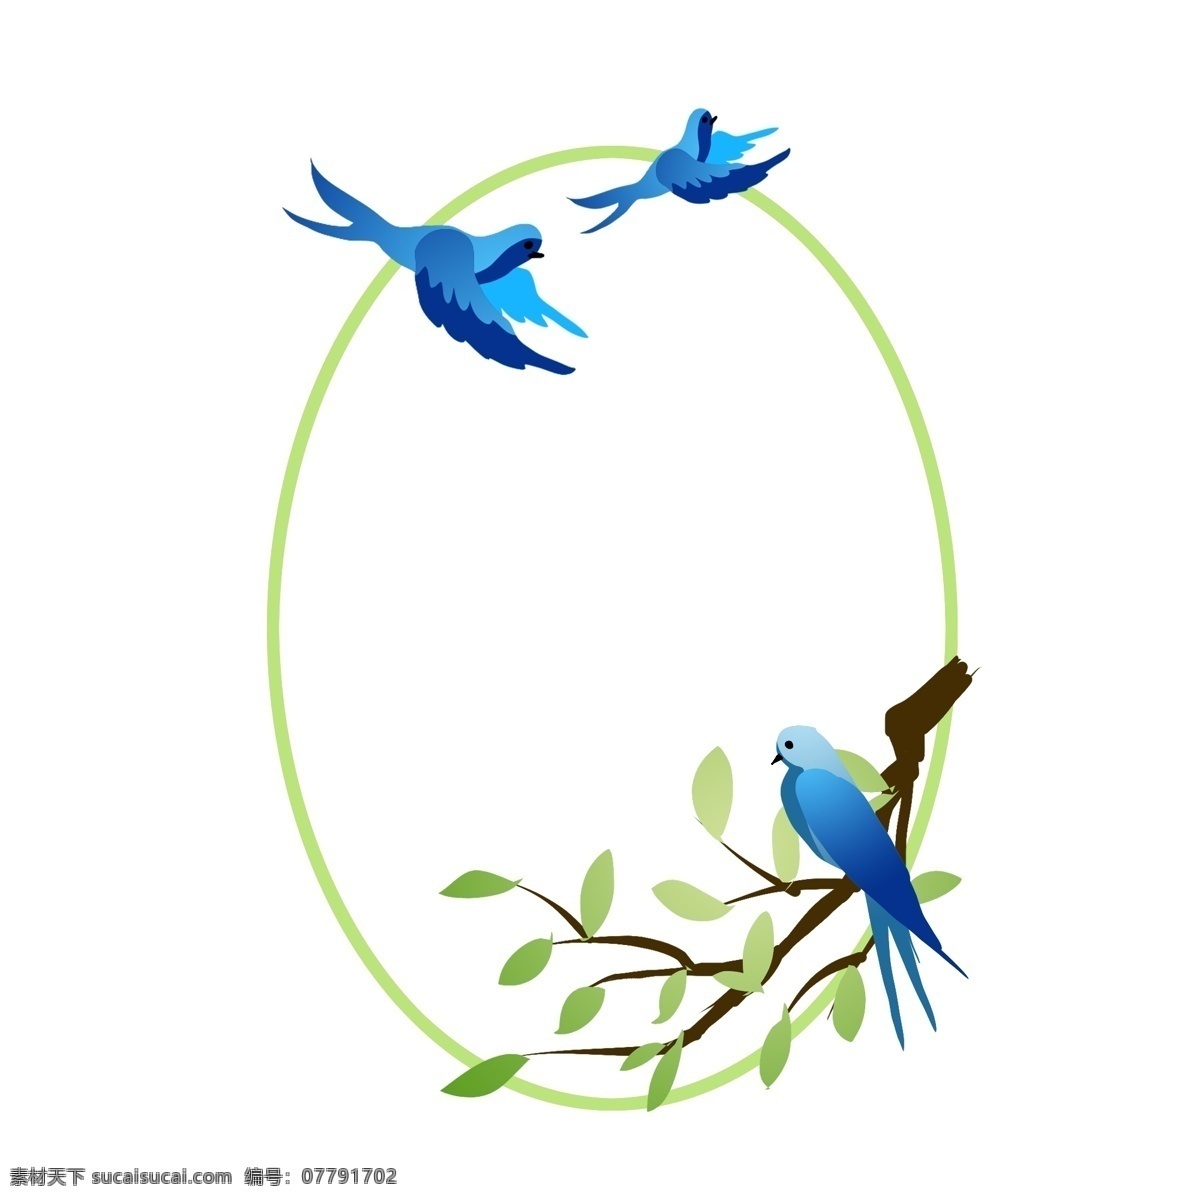 春季 绿色 椭圆形 边框 椭圆形边框 春季边框 绿色边框 树枝 绿叶装饰 蓝色的小鸟 飞翔的小鸟 边框装饰